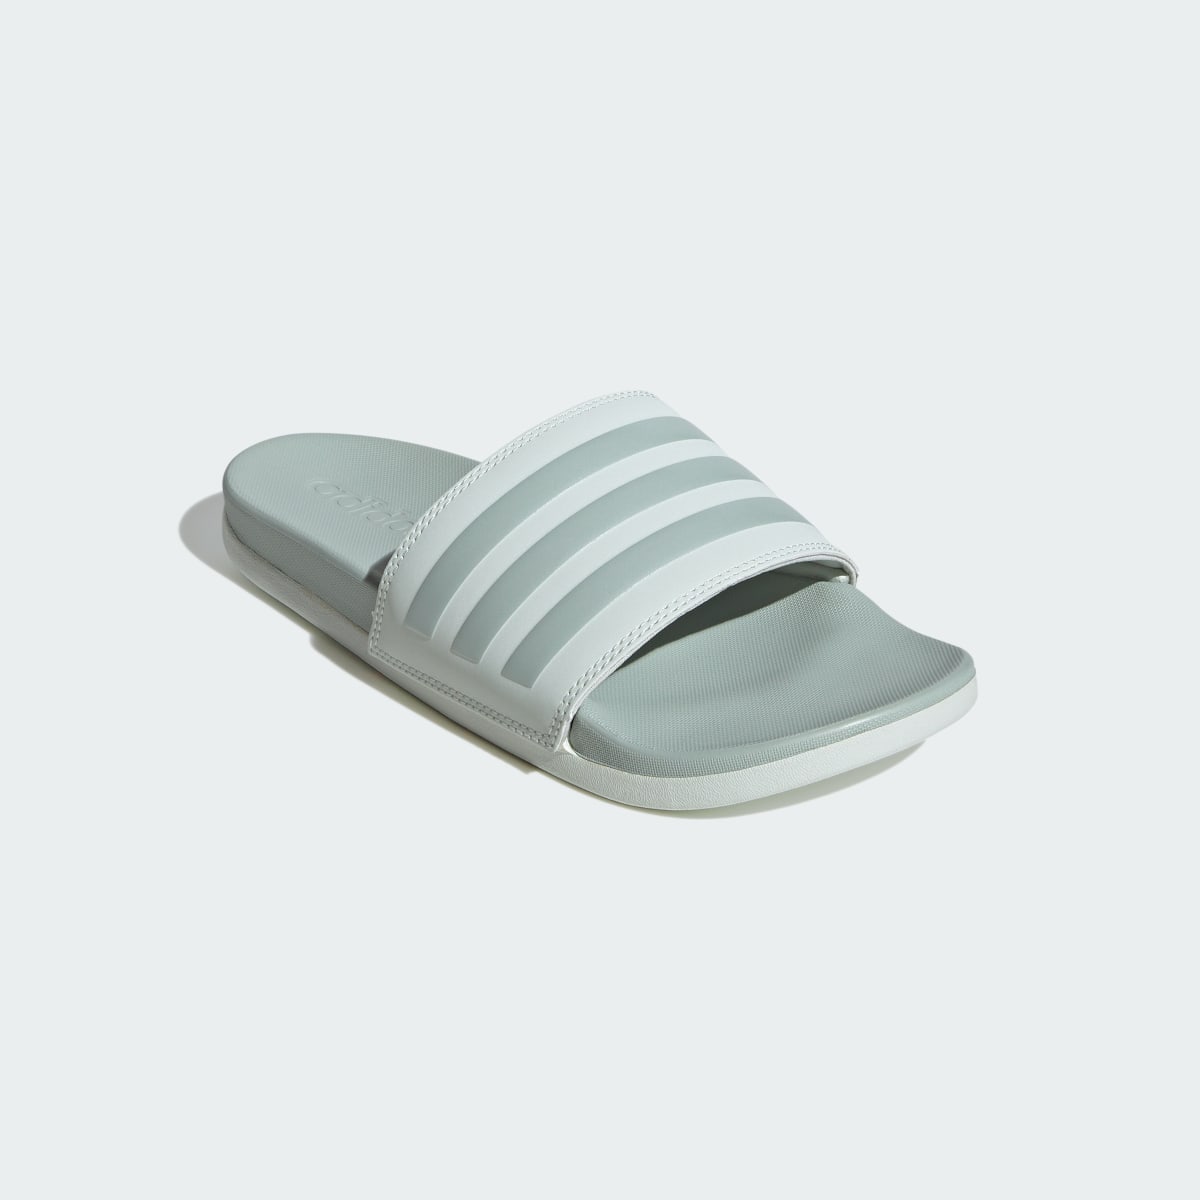 Adidas Adilette Comfort Slides. 5